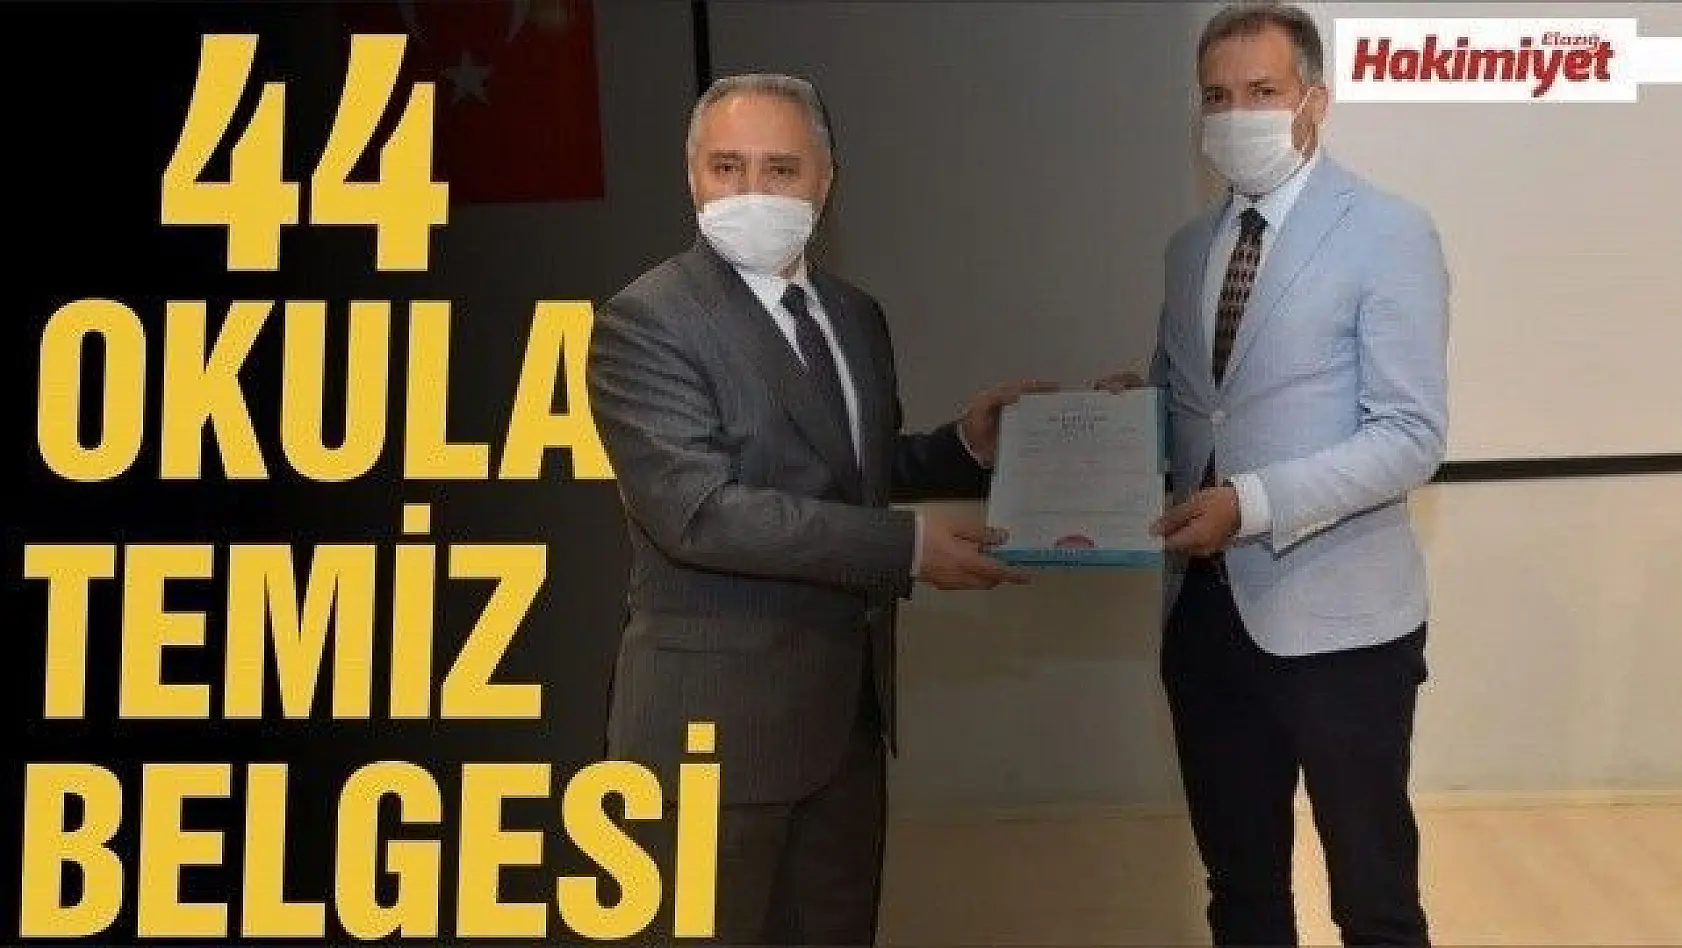  Elazığ'da 44 okula 'Okulum Temiz' belgesi verildi